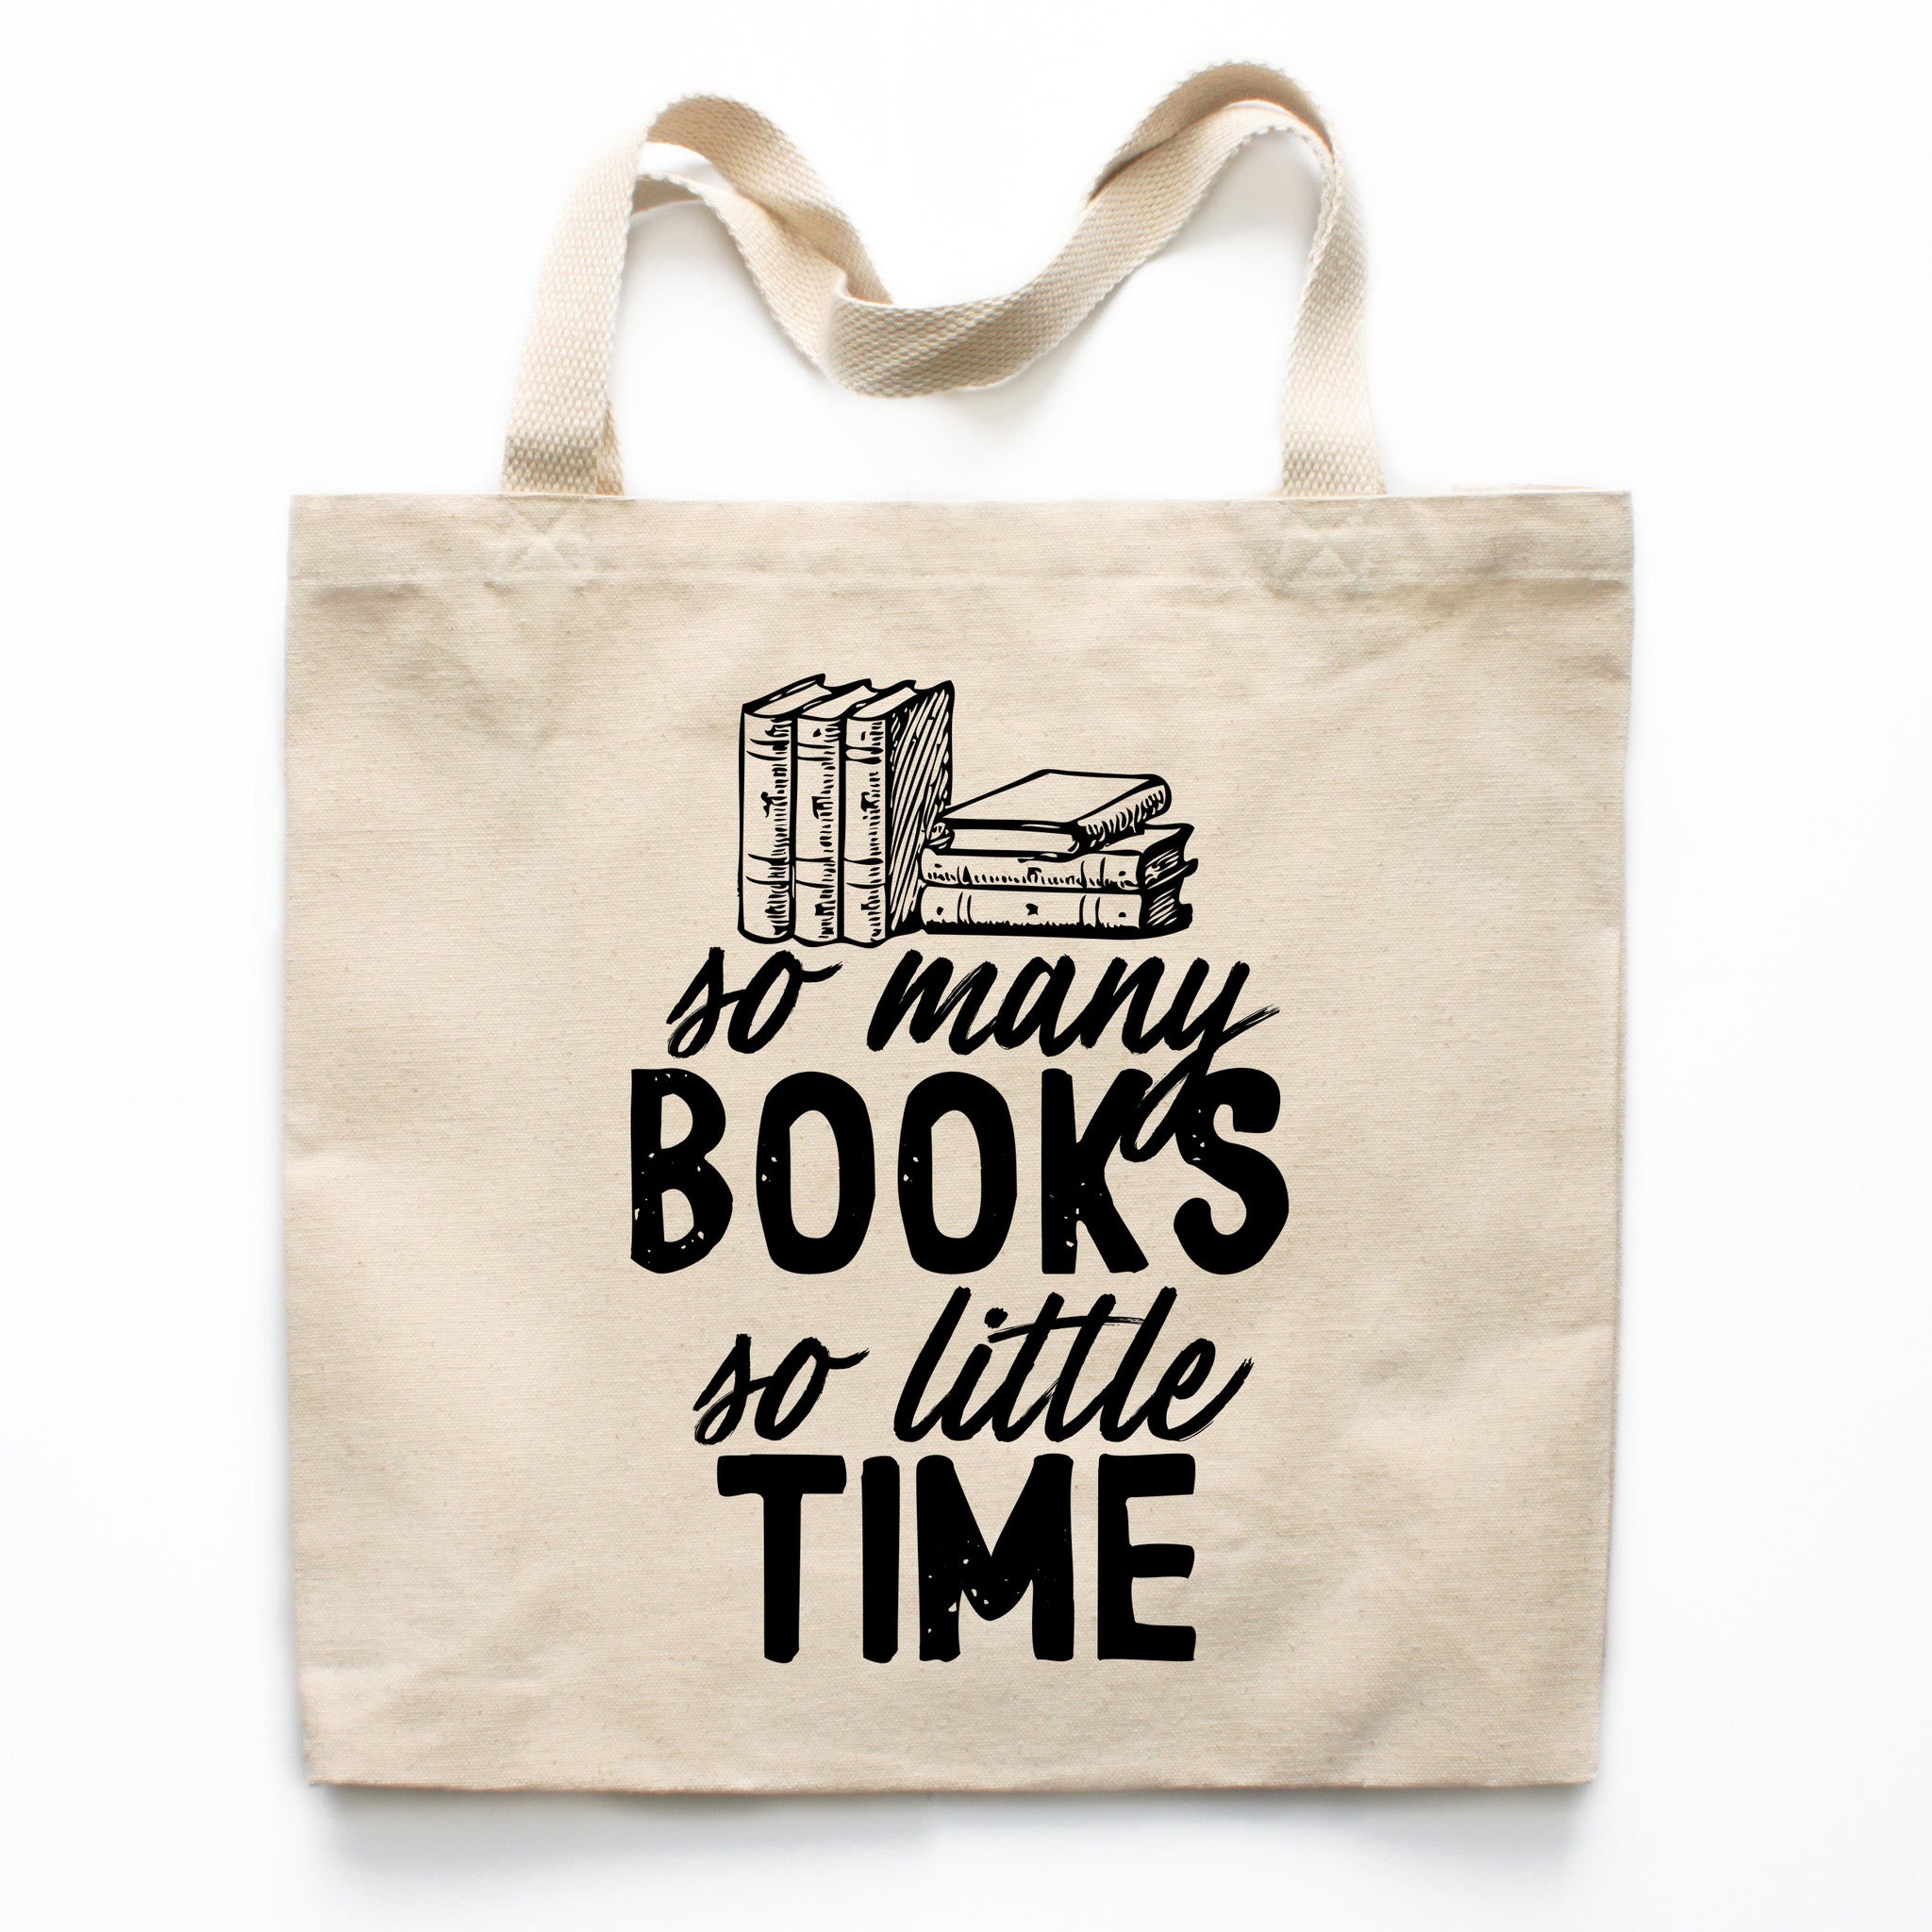 Too Many Books Tote Bag